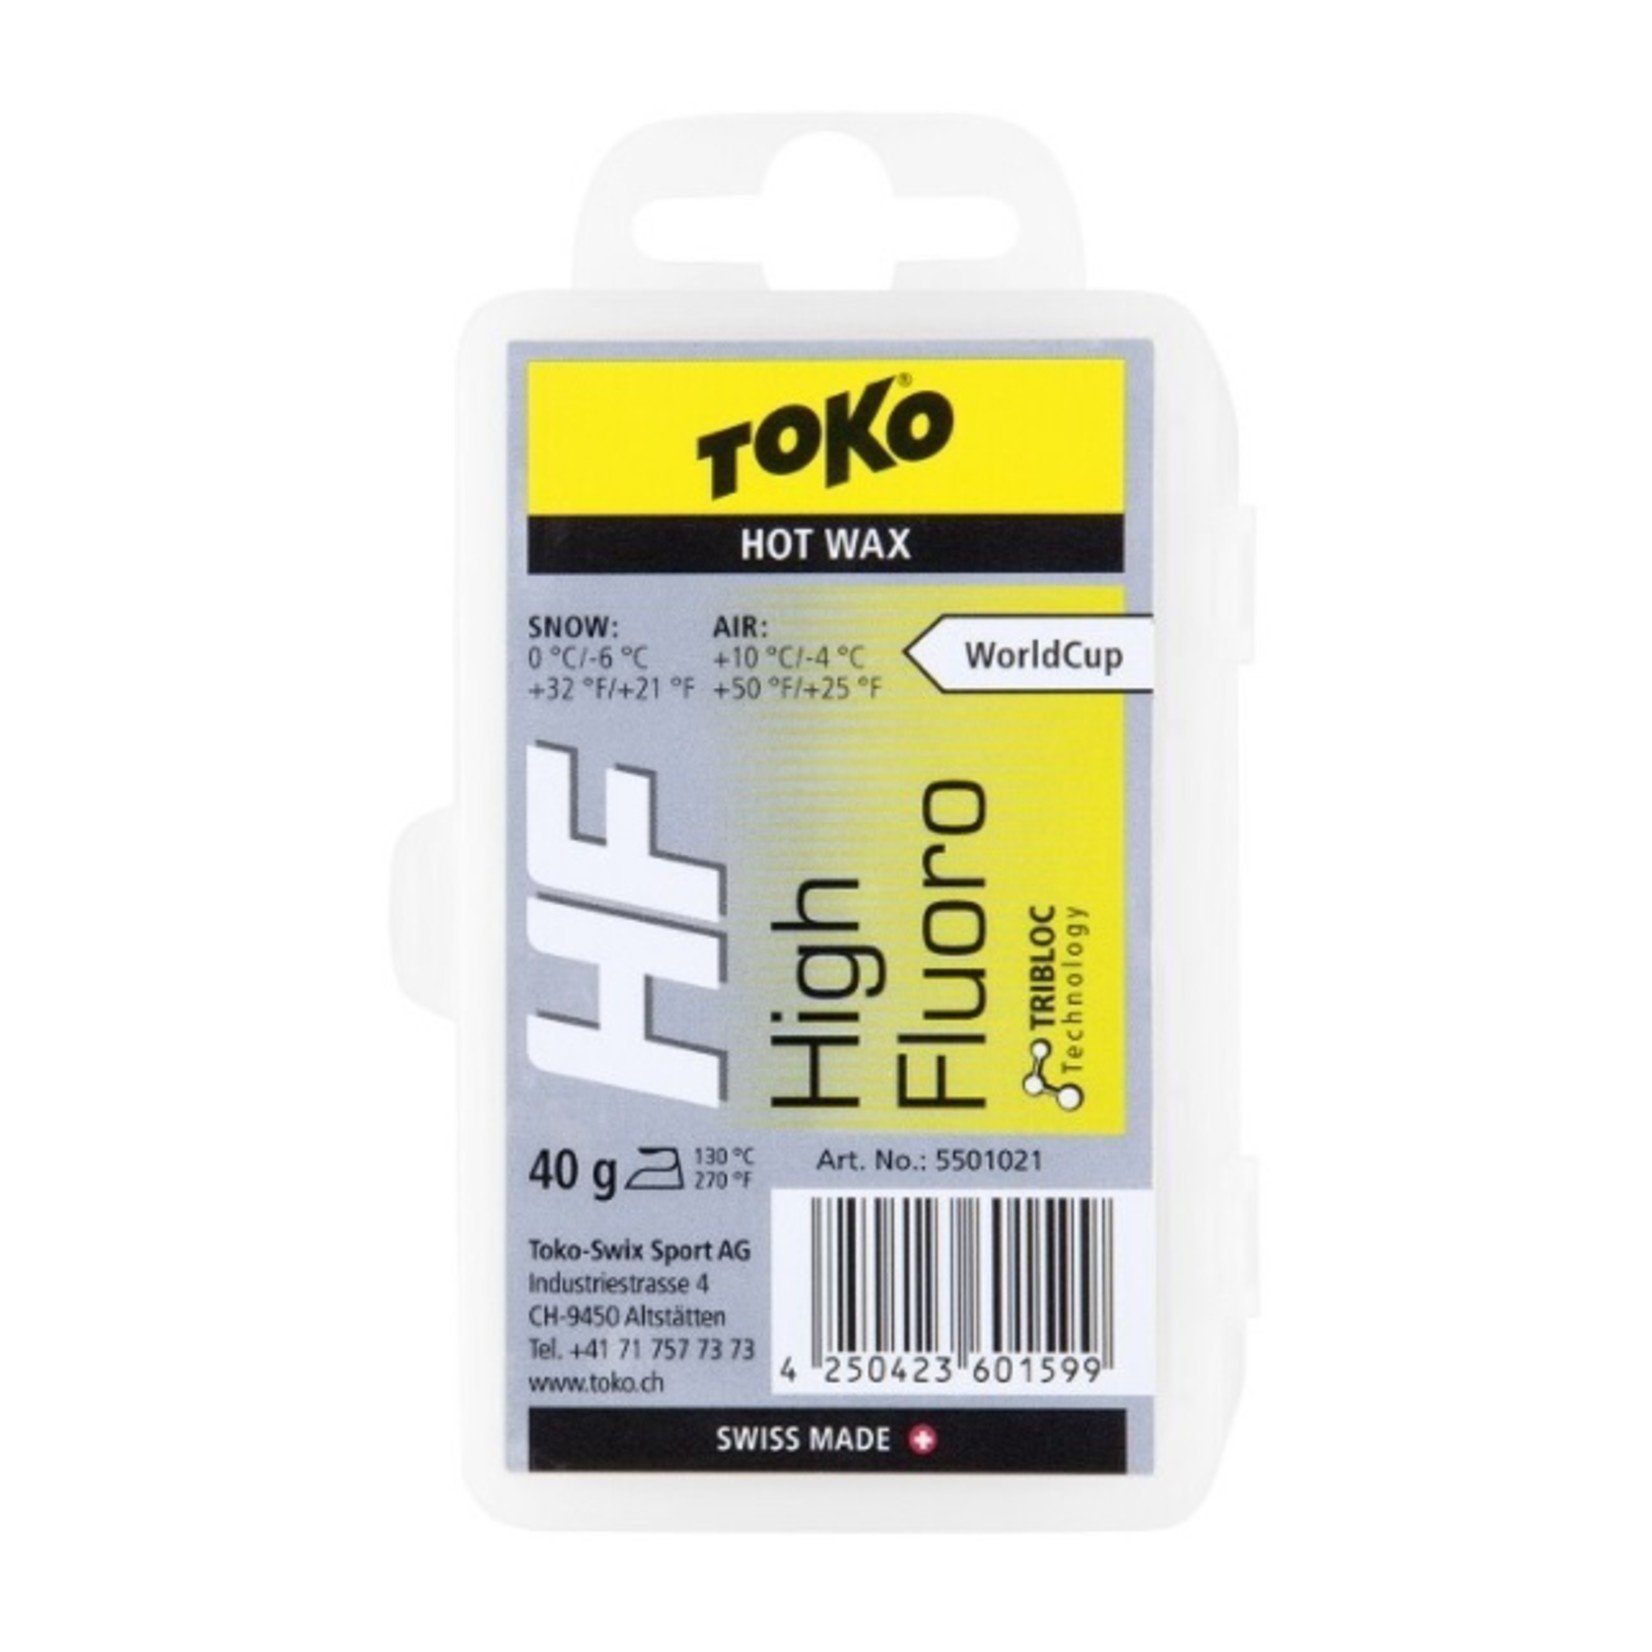 Toko Toko HF Wax Yellow (0 to -6), 40g